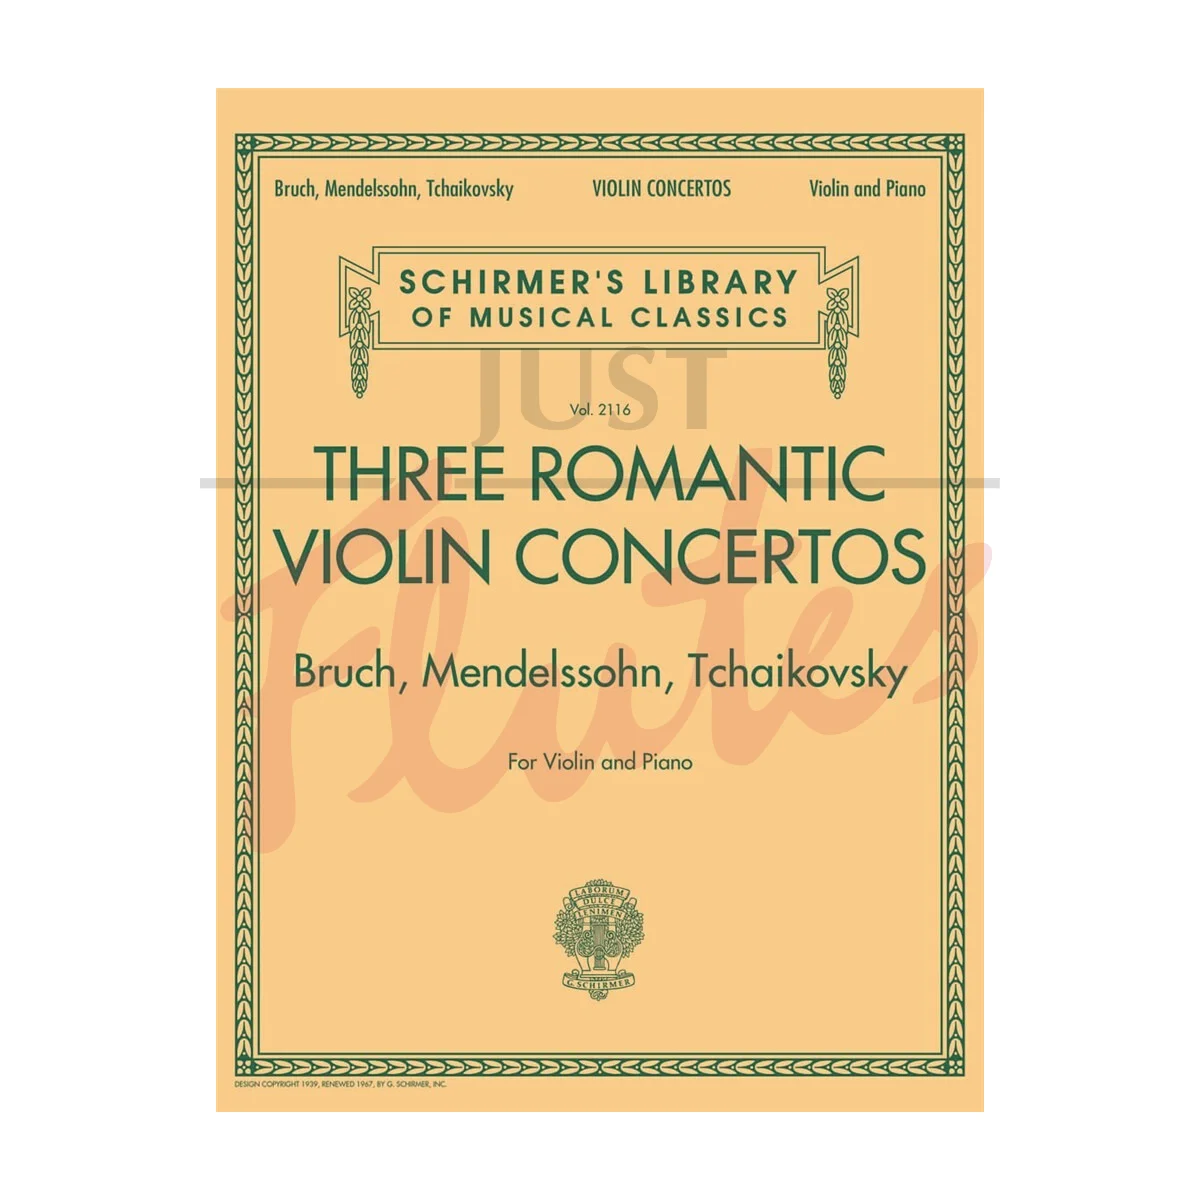 Three Romantic Violin Concertos for Violin and Piano